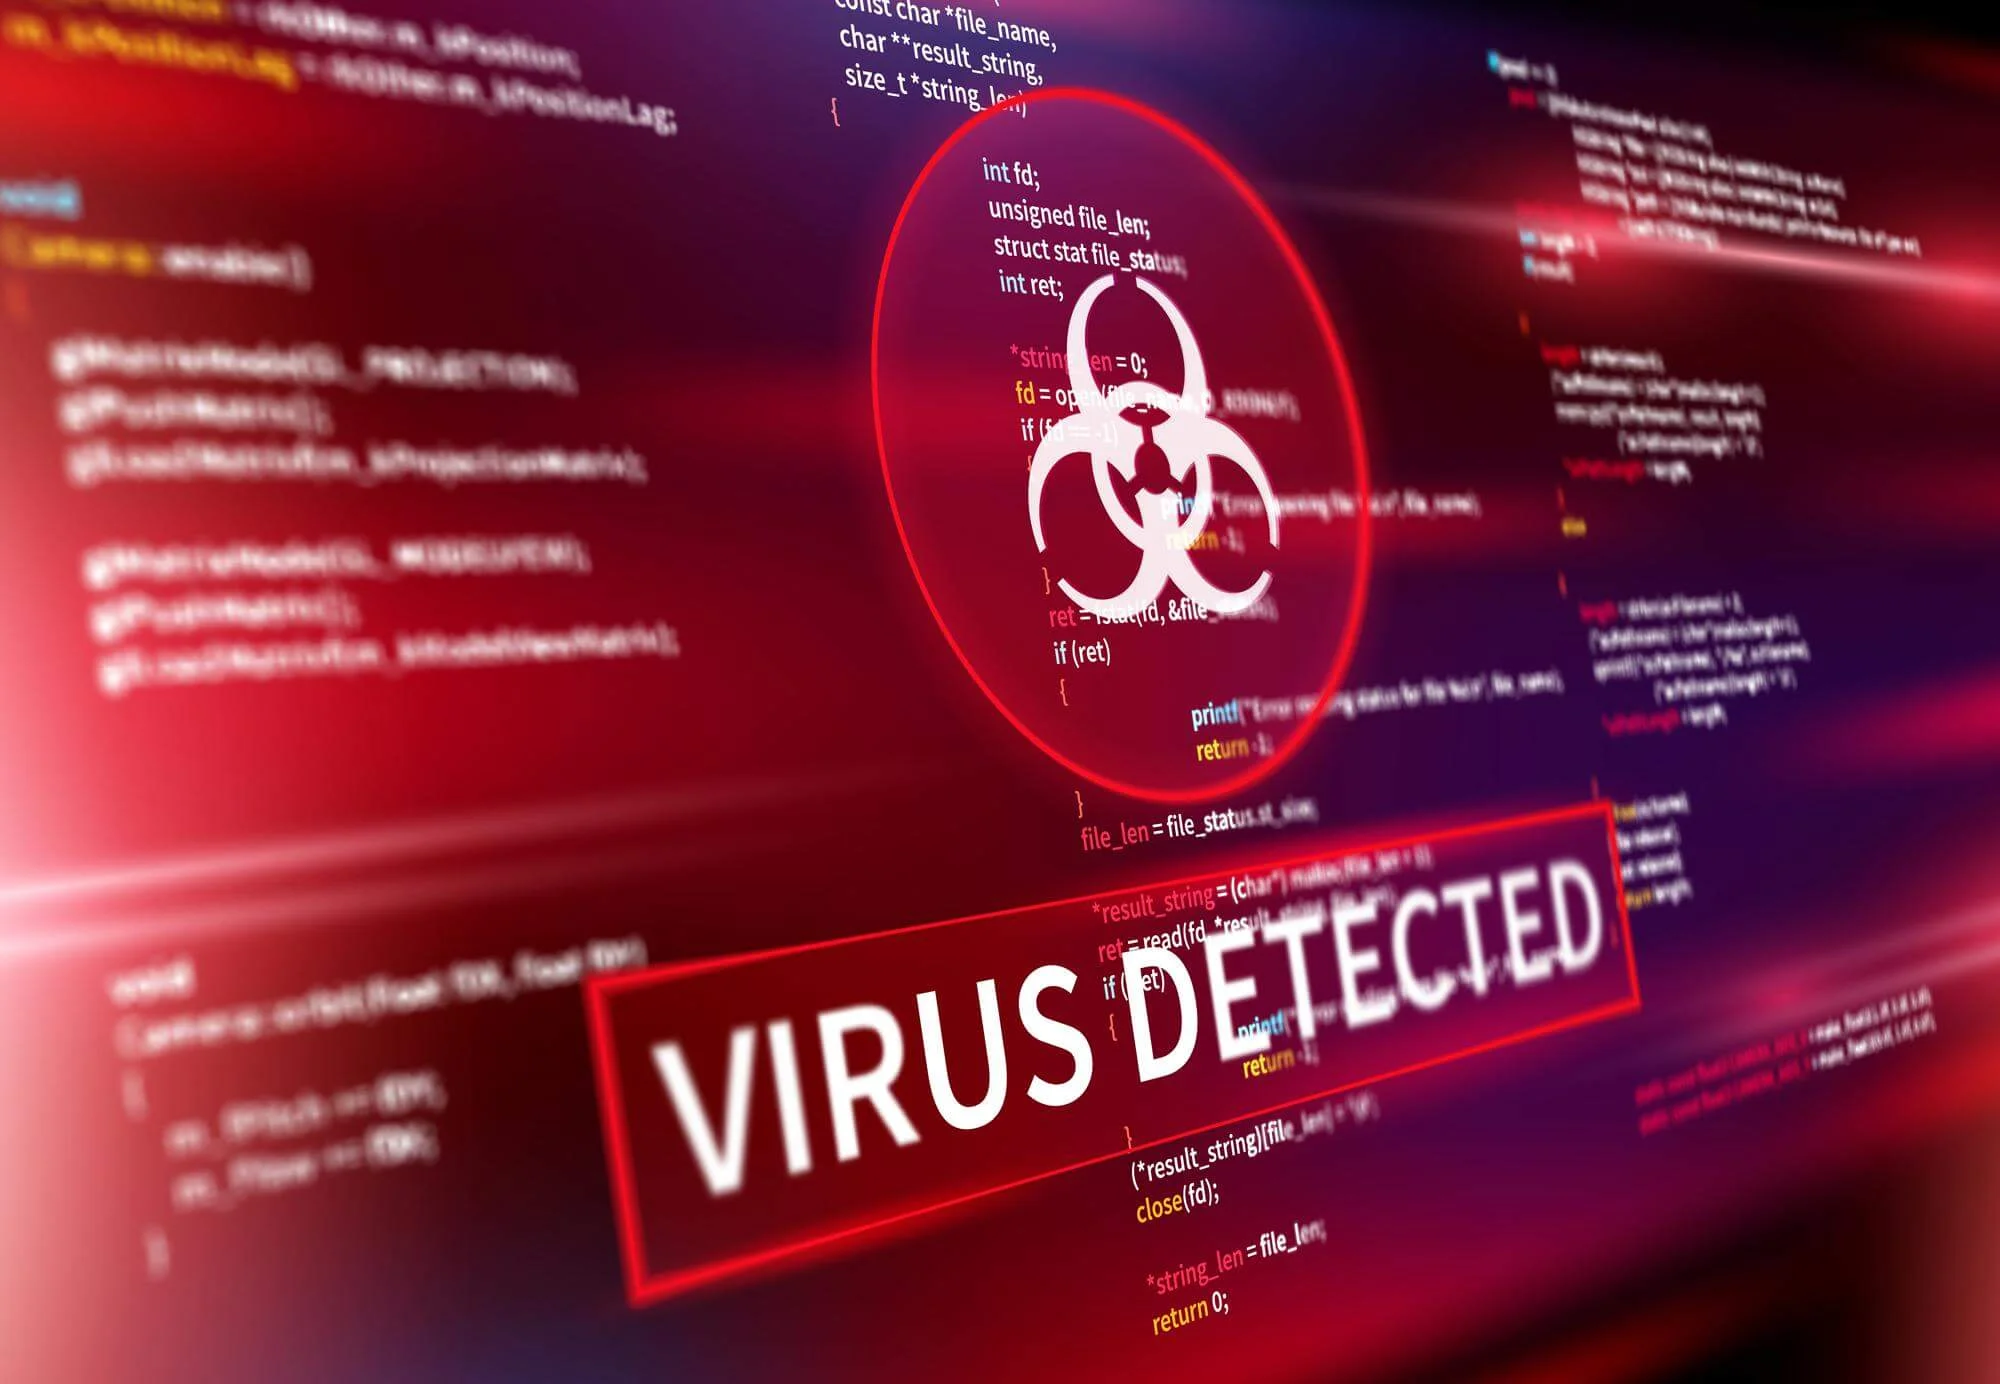 فيروسات الكمبيوتر هي برامج ضارة ومُعدية تتسلل إلى أجهزة الكمبيوتر لأغراض مختلفة